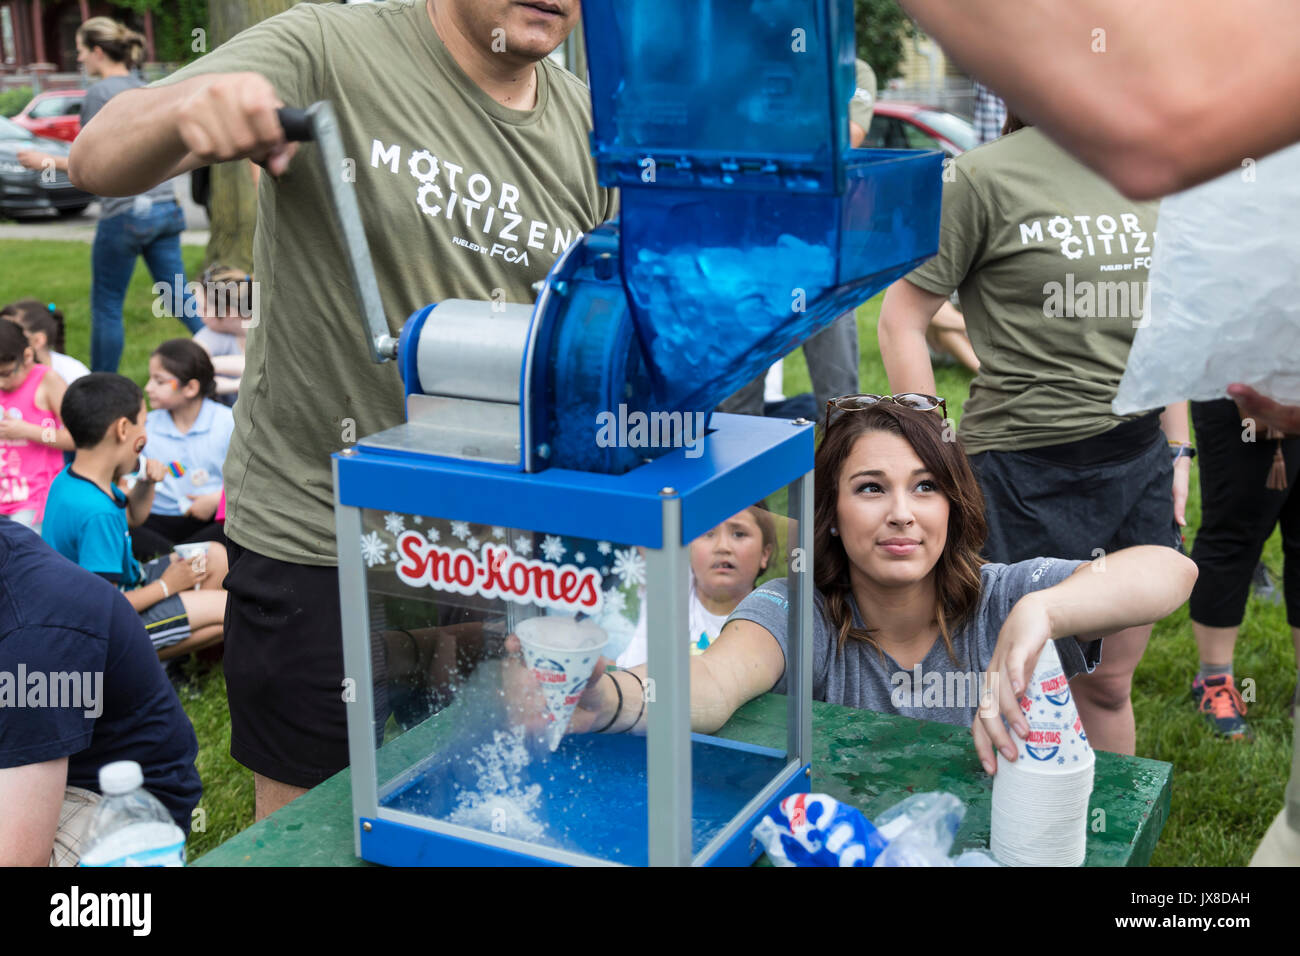 Detroit, Michigan - Freiwilliger, Sno-kones für Kinder im Sommer Aktivitäten in der Clark Park. Stockfoto